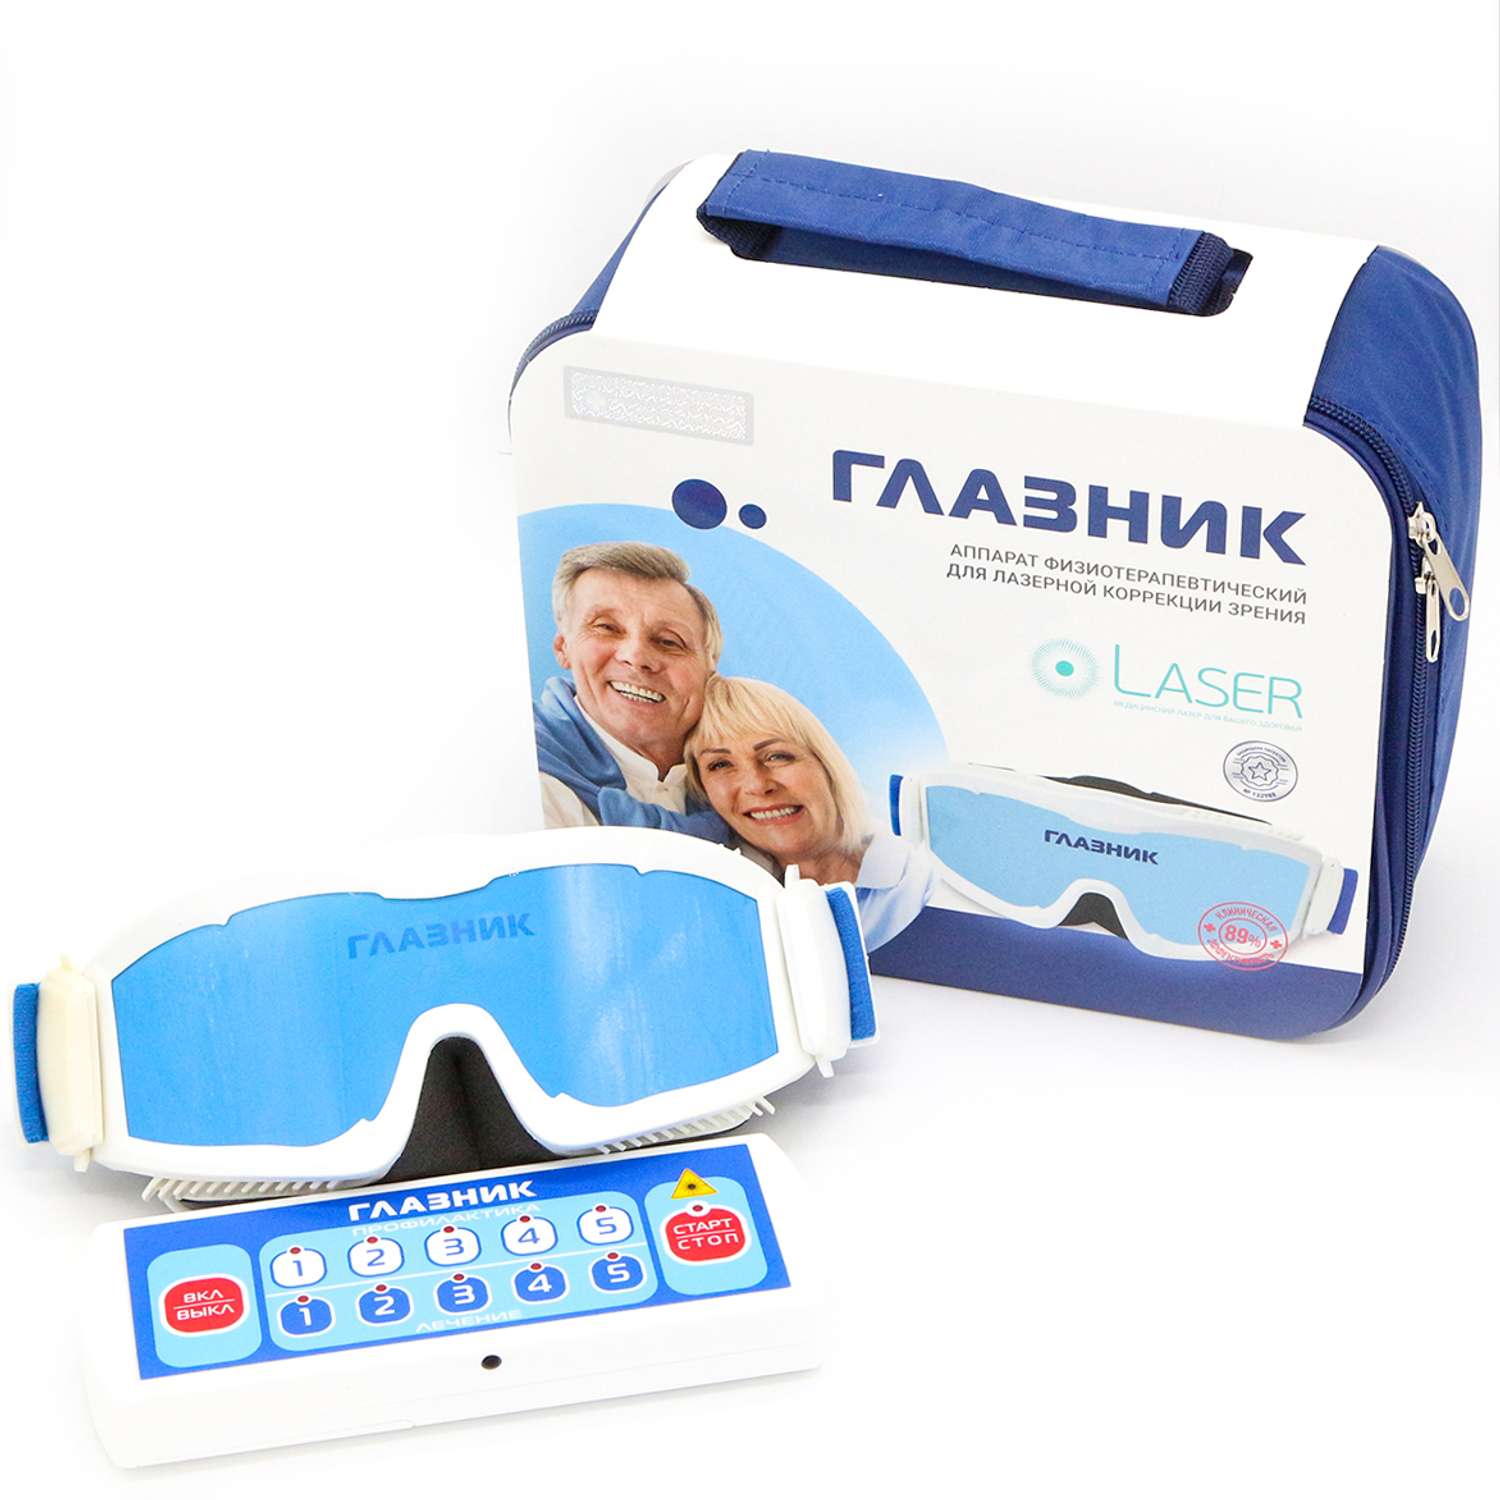 Физиотерапевтический аппарат Невотон лазерный Глазник для лечения и профилактики заболеваний глаз - фото 1